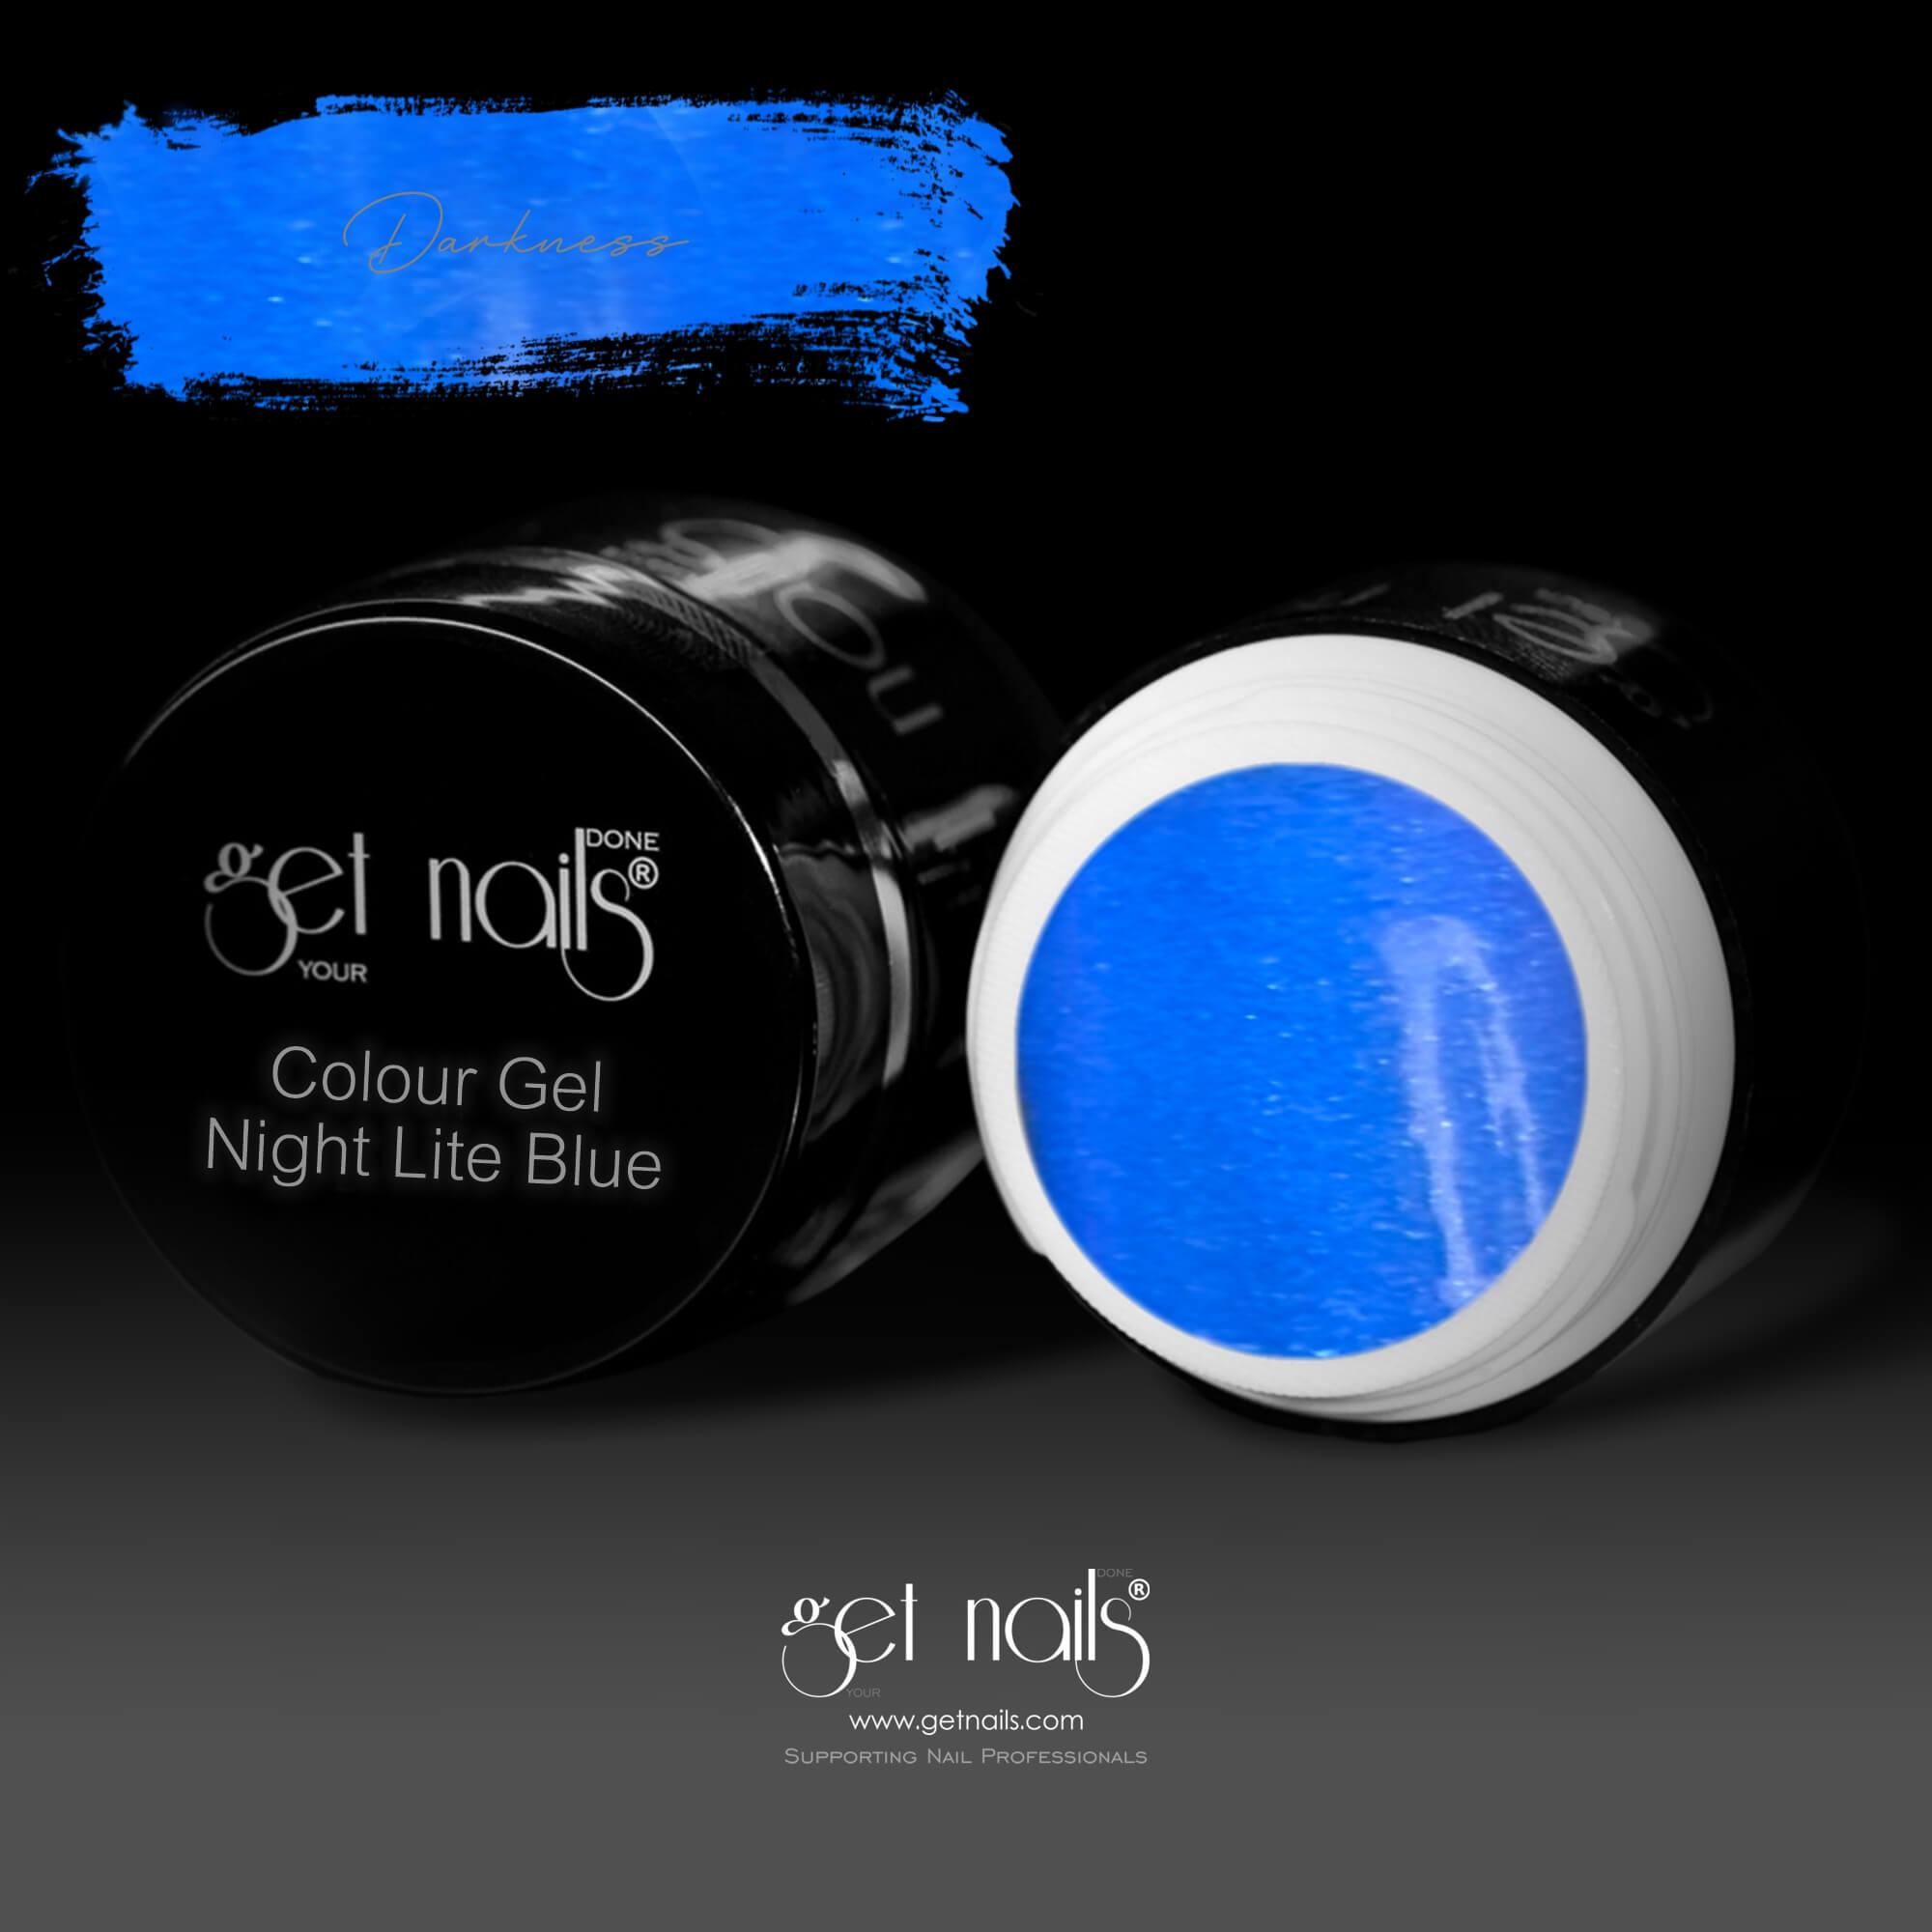 Get Nails Austria - Night Lite Colour Gel Blue 5g darkness